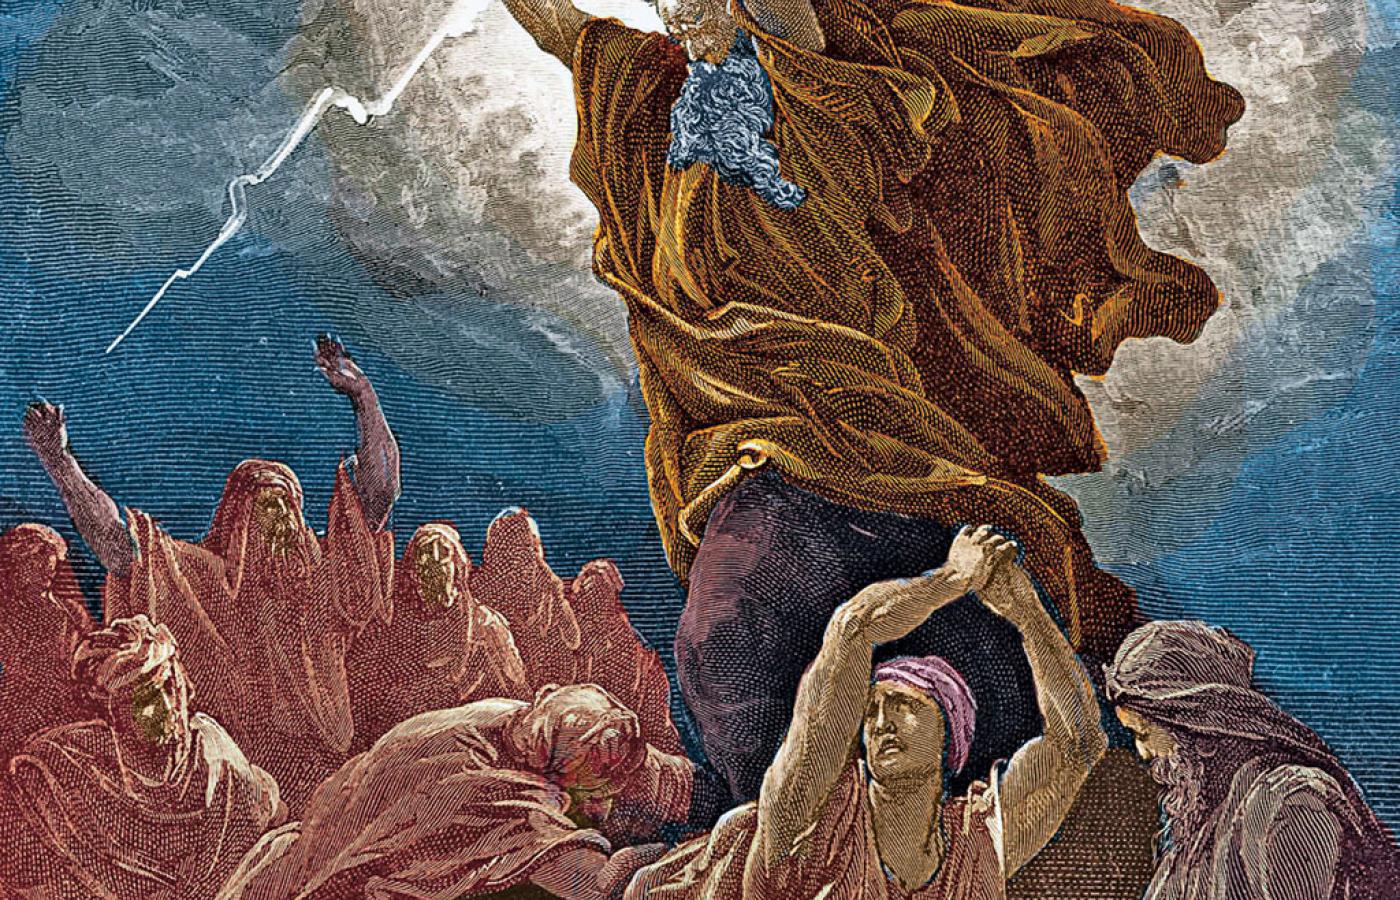 Mojżesz otrzymuje od Boga tablice z dekalogiem - staloryt, XIX w., Gustave Dore